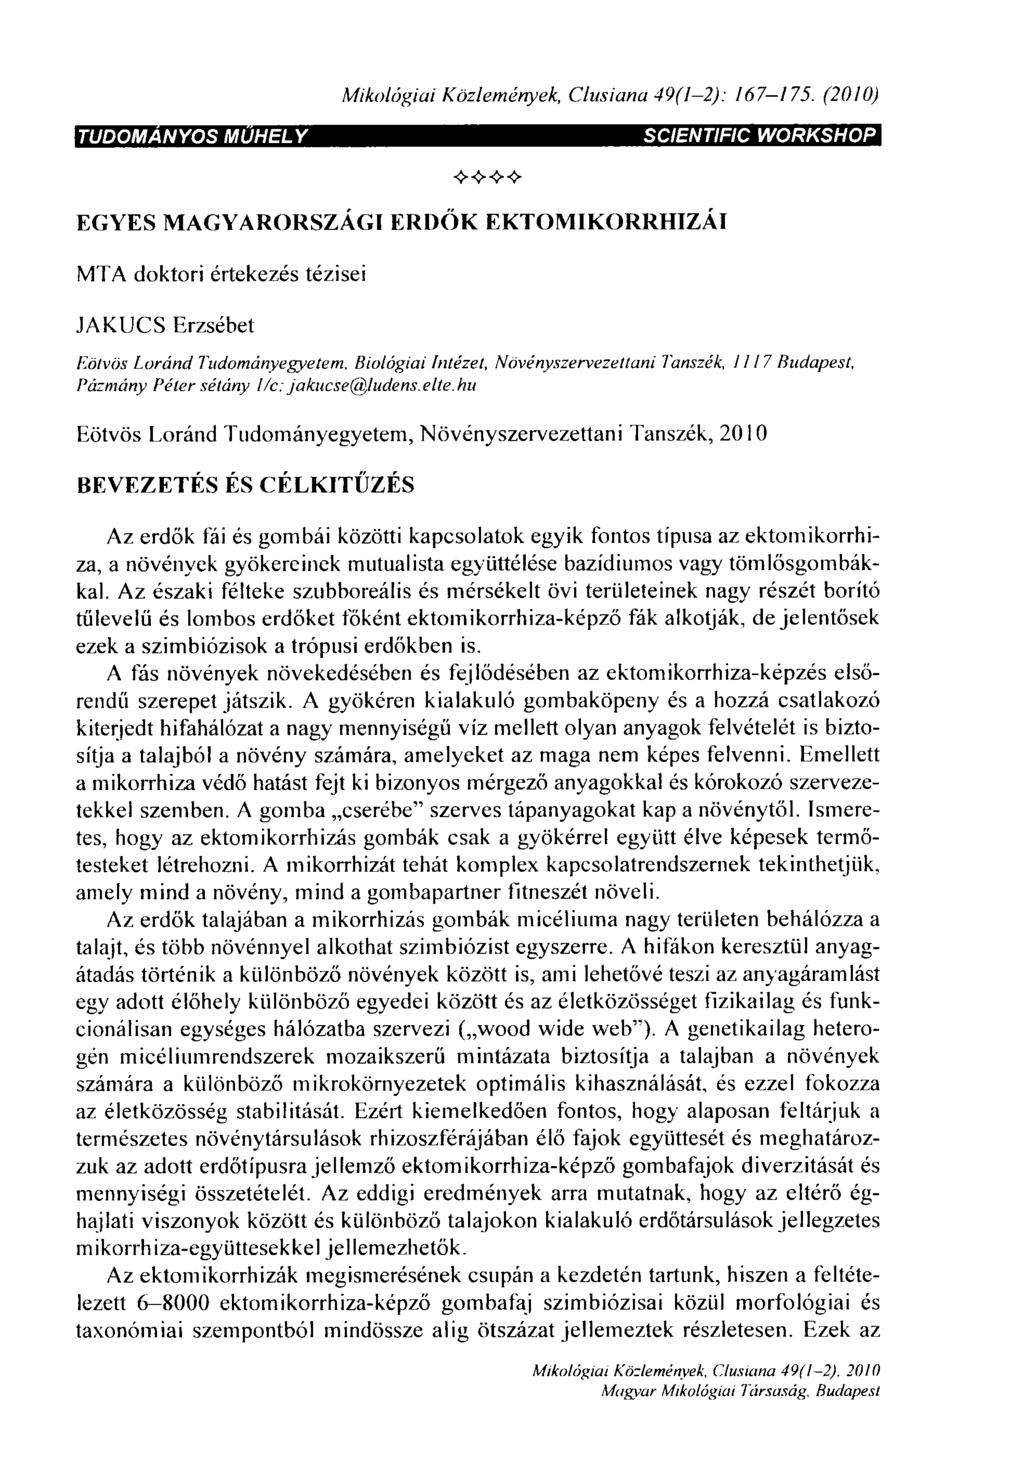 Mikológiái Közlemények, Clusiana 49(1-2): 167-137.